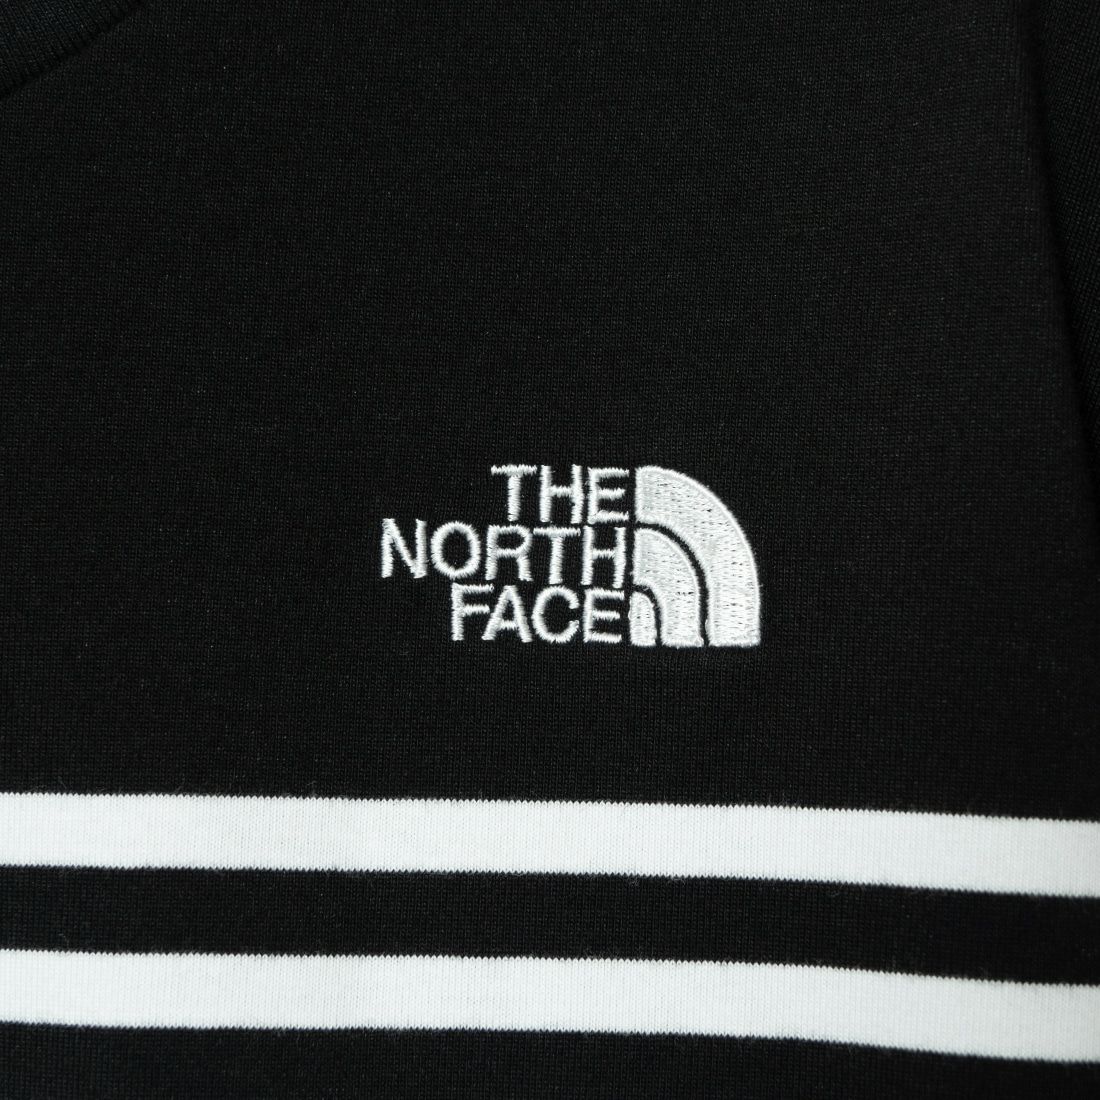 THE NORTH FACE [ザ ノースフェイス] ショートスリーブパネルボーダーTシャツ [NT32406] K